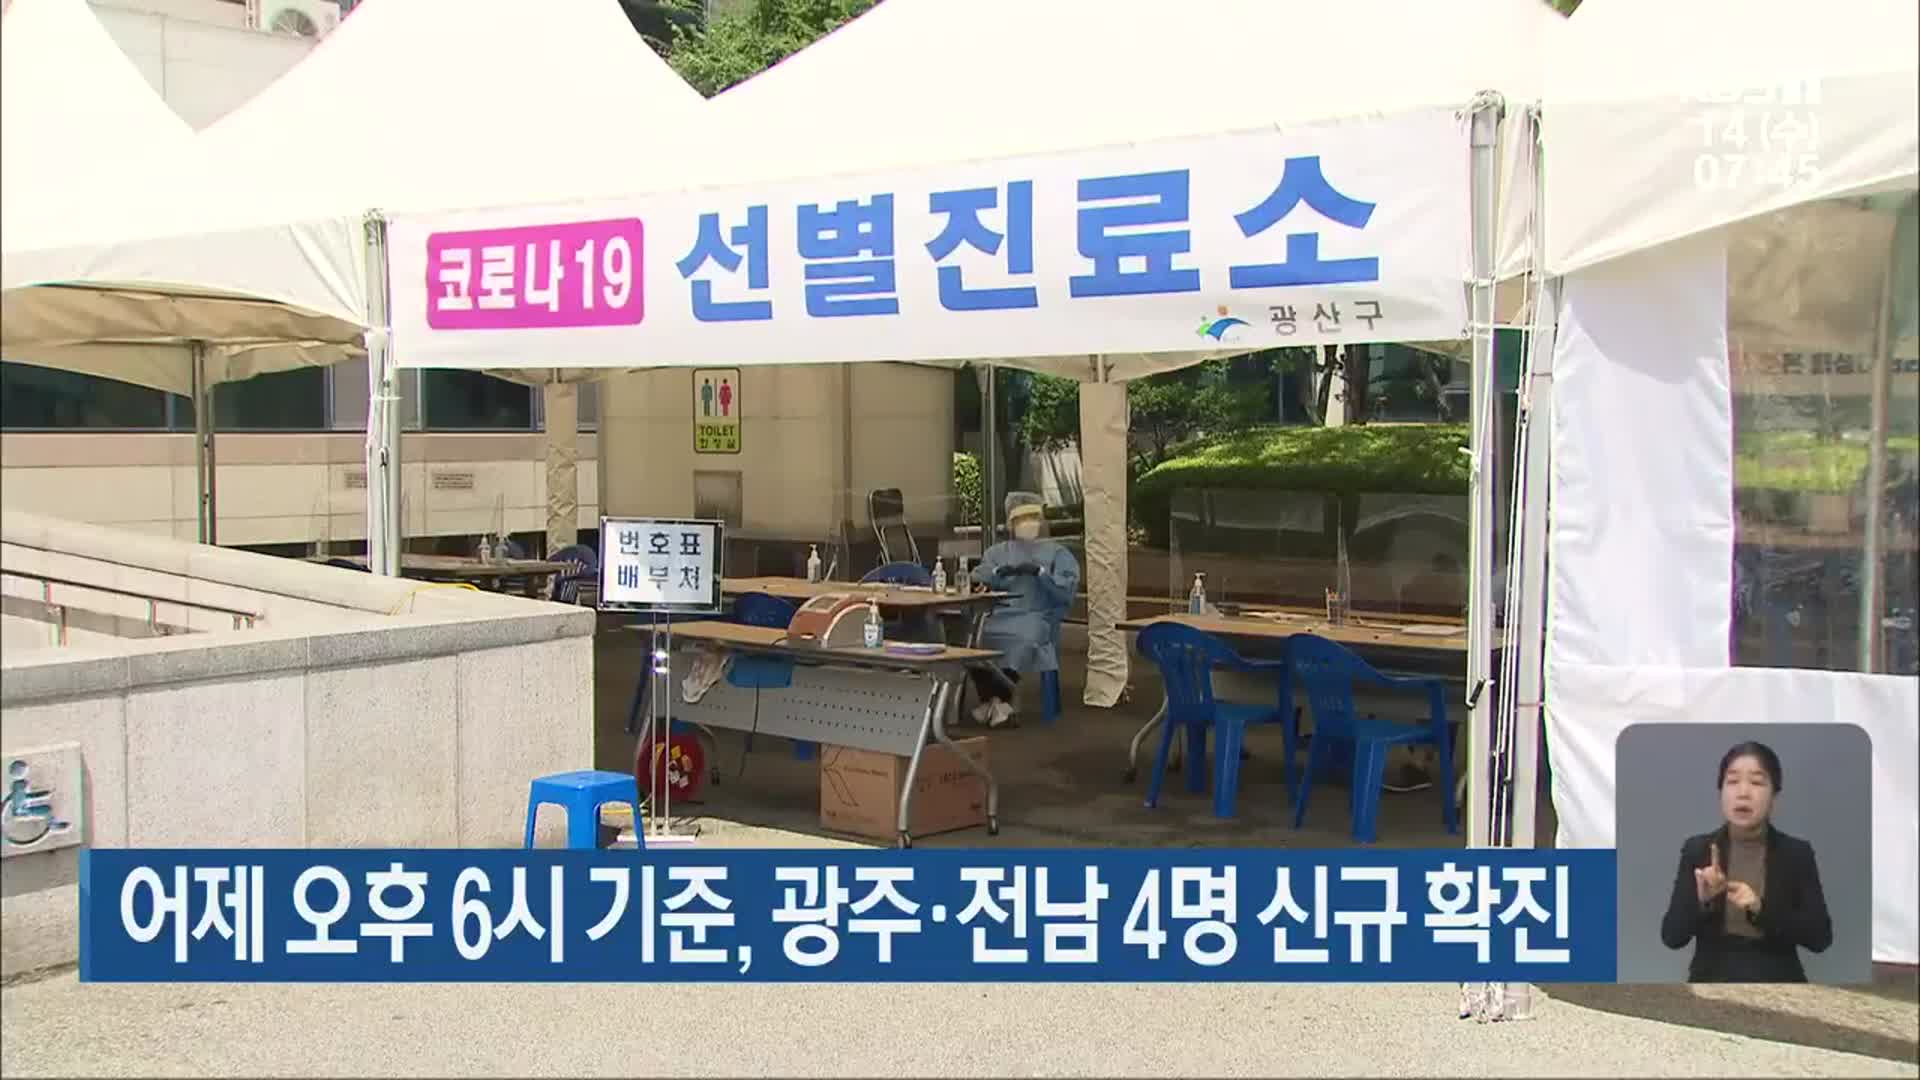 어제 오후 6시 기준, 광주·전남 4명 신규 확진